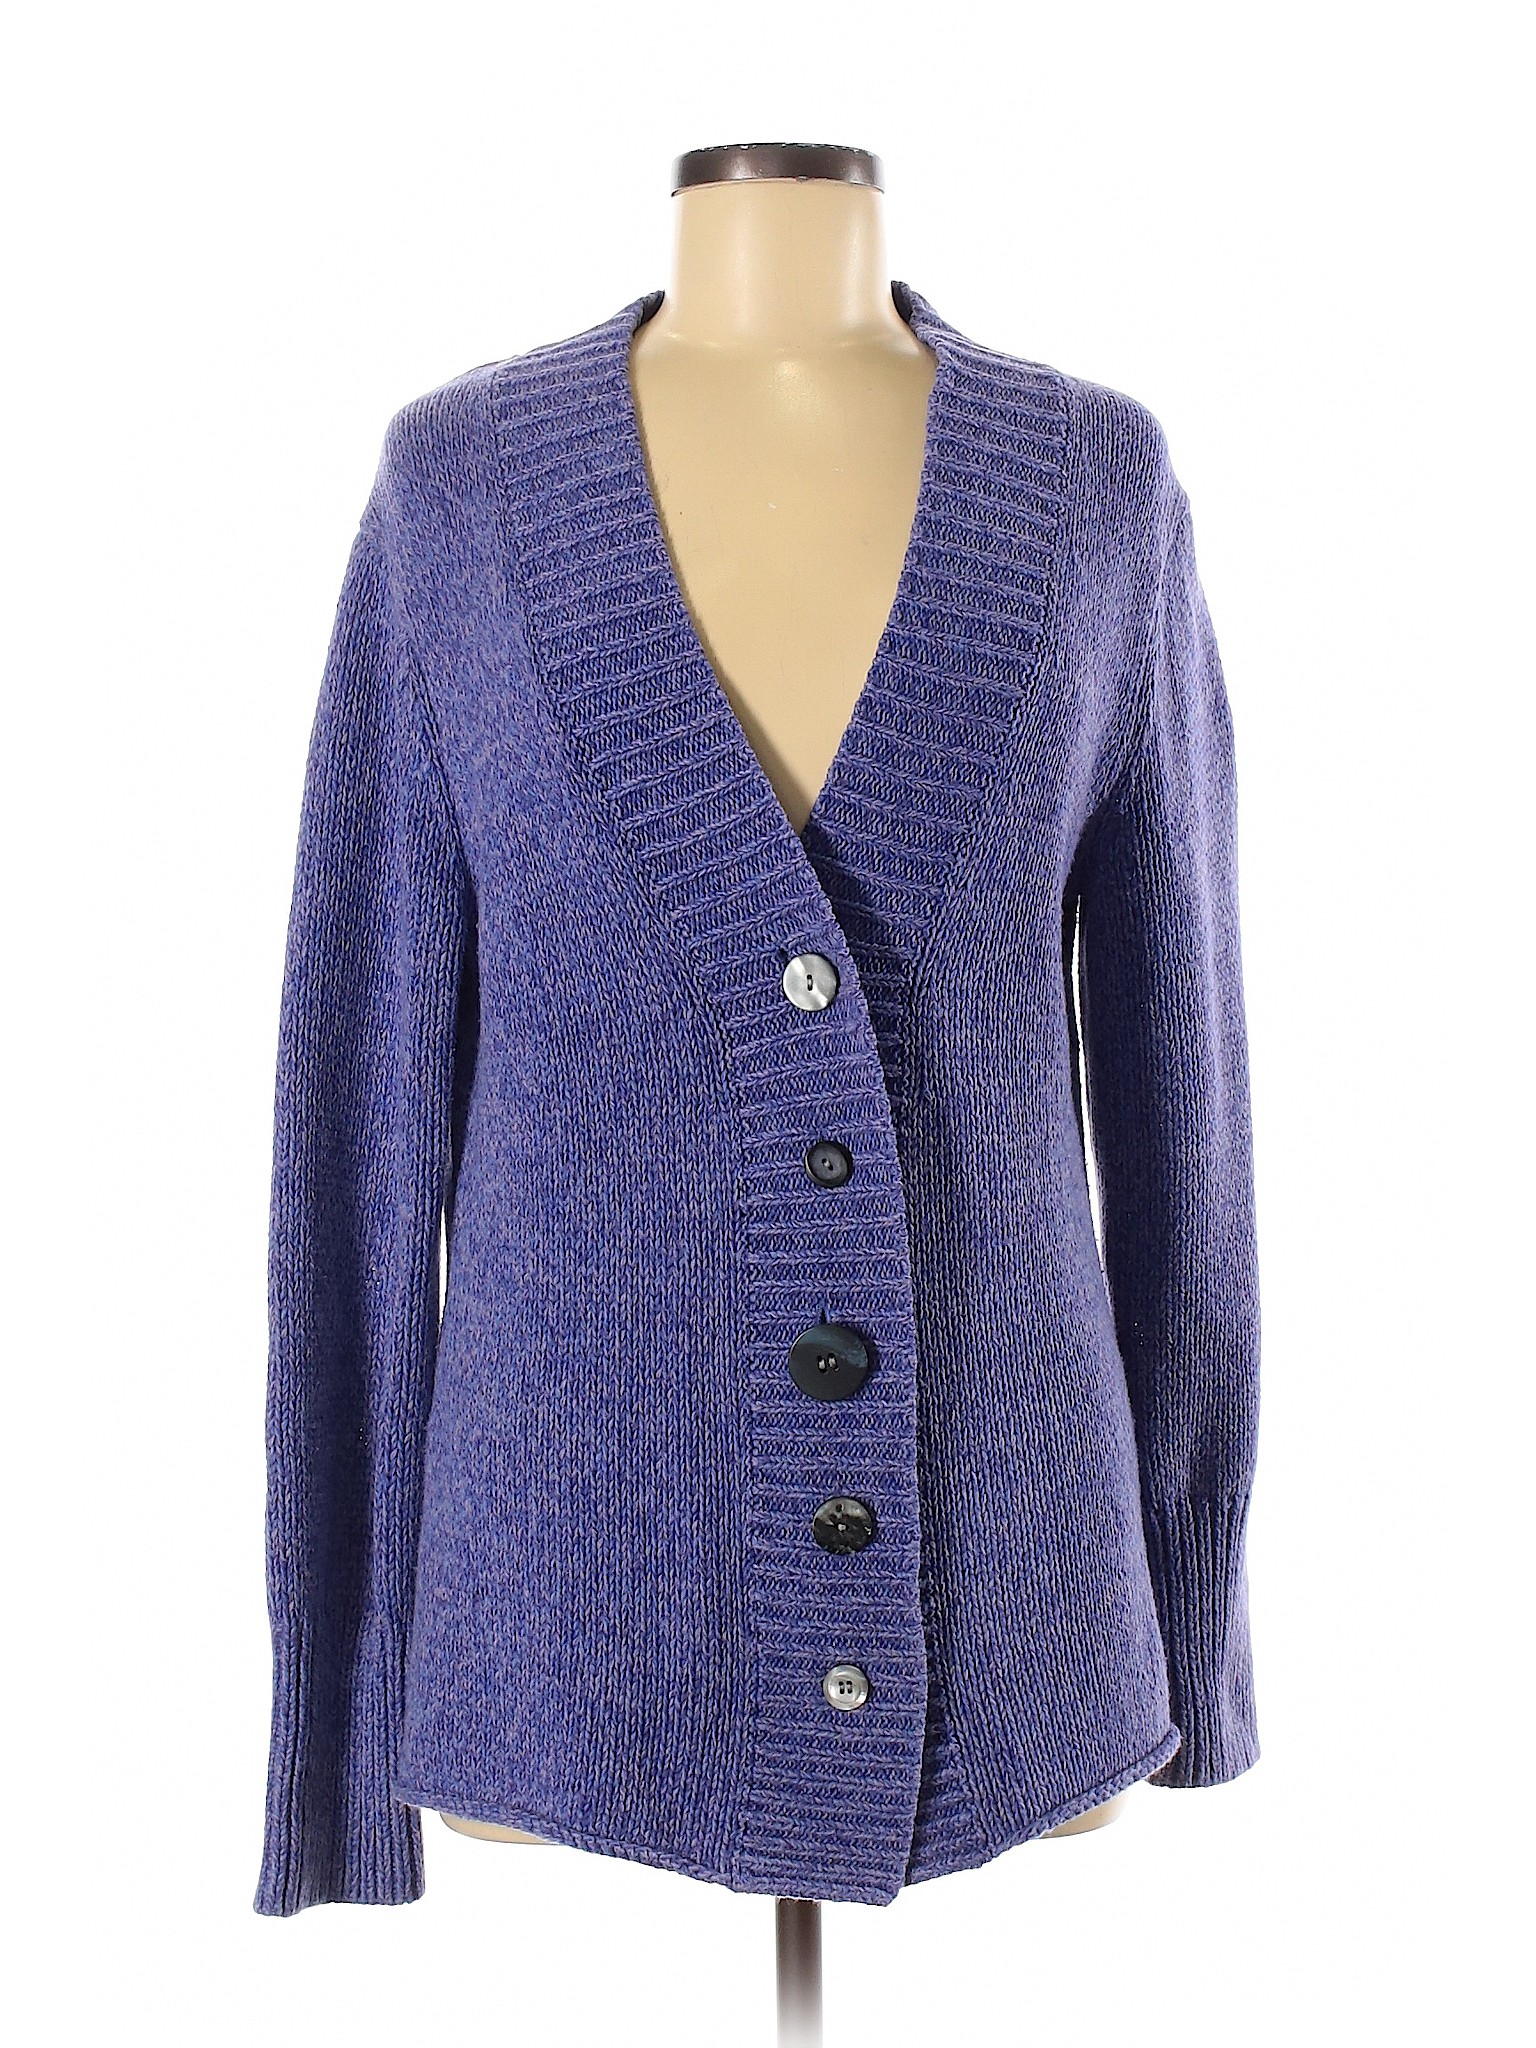 J.jill Women Purple Cardigan M | eBay